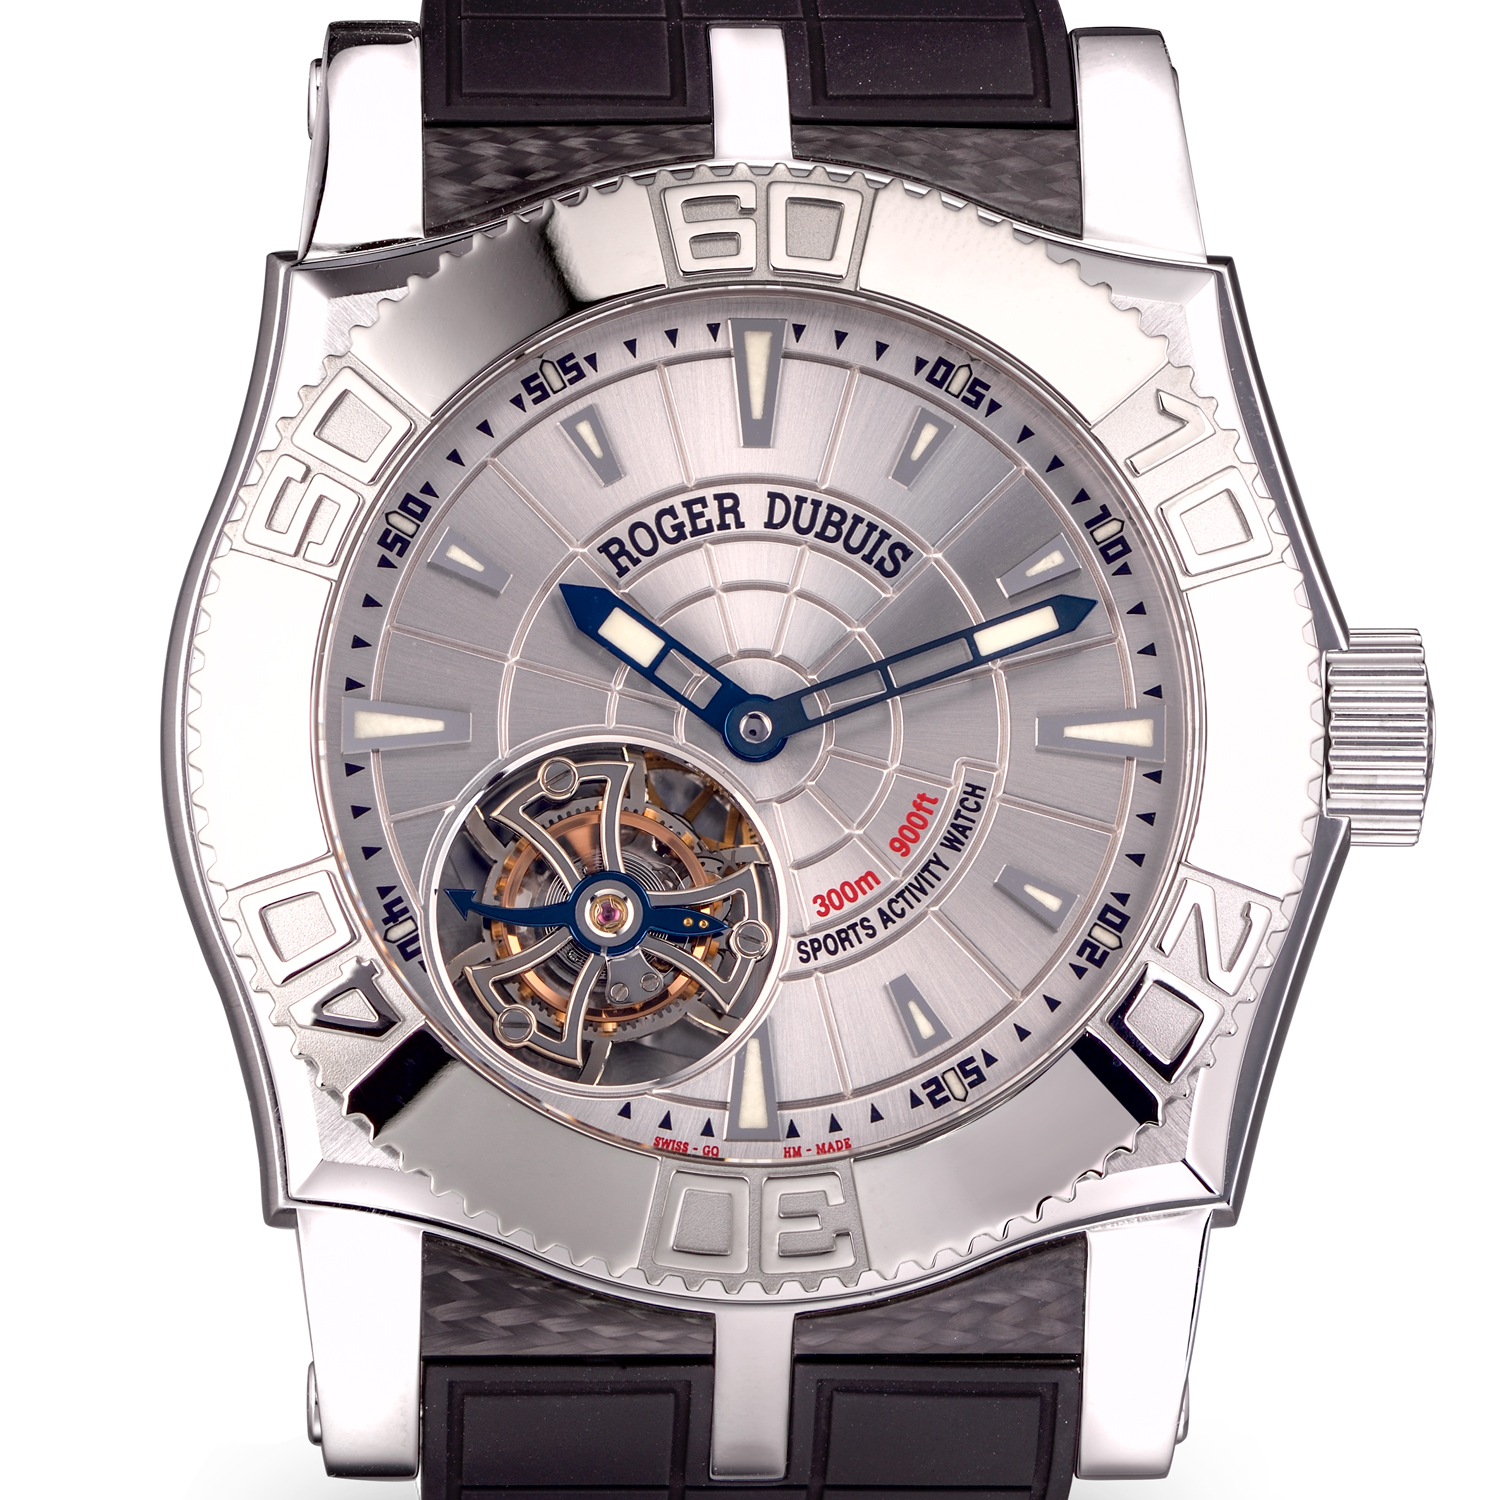 Швейцарские часы Roger Dubuis EasyDiver Tourbillon SE48 02 9/0(1267) №4